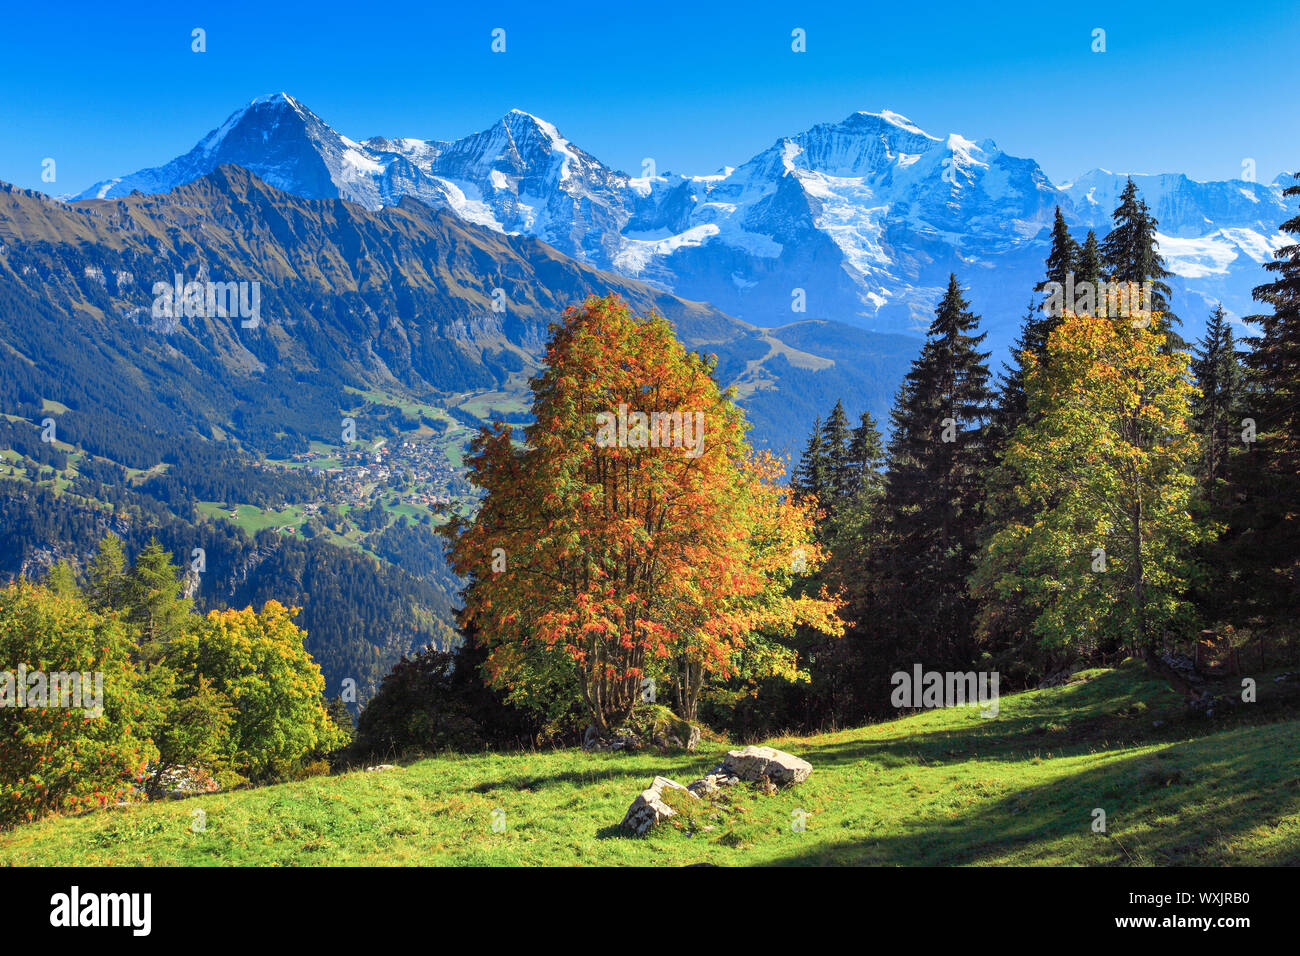 Le montagne Eiger (3967 m), Moench (4107 m) e Jungfrau (4158 m) Foto Stock